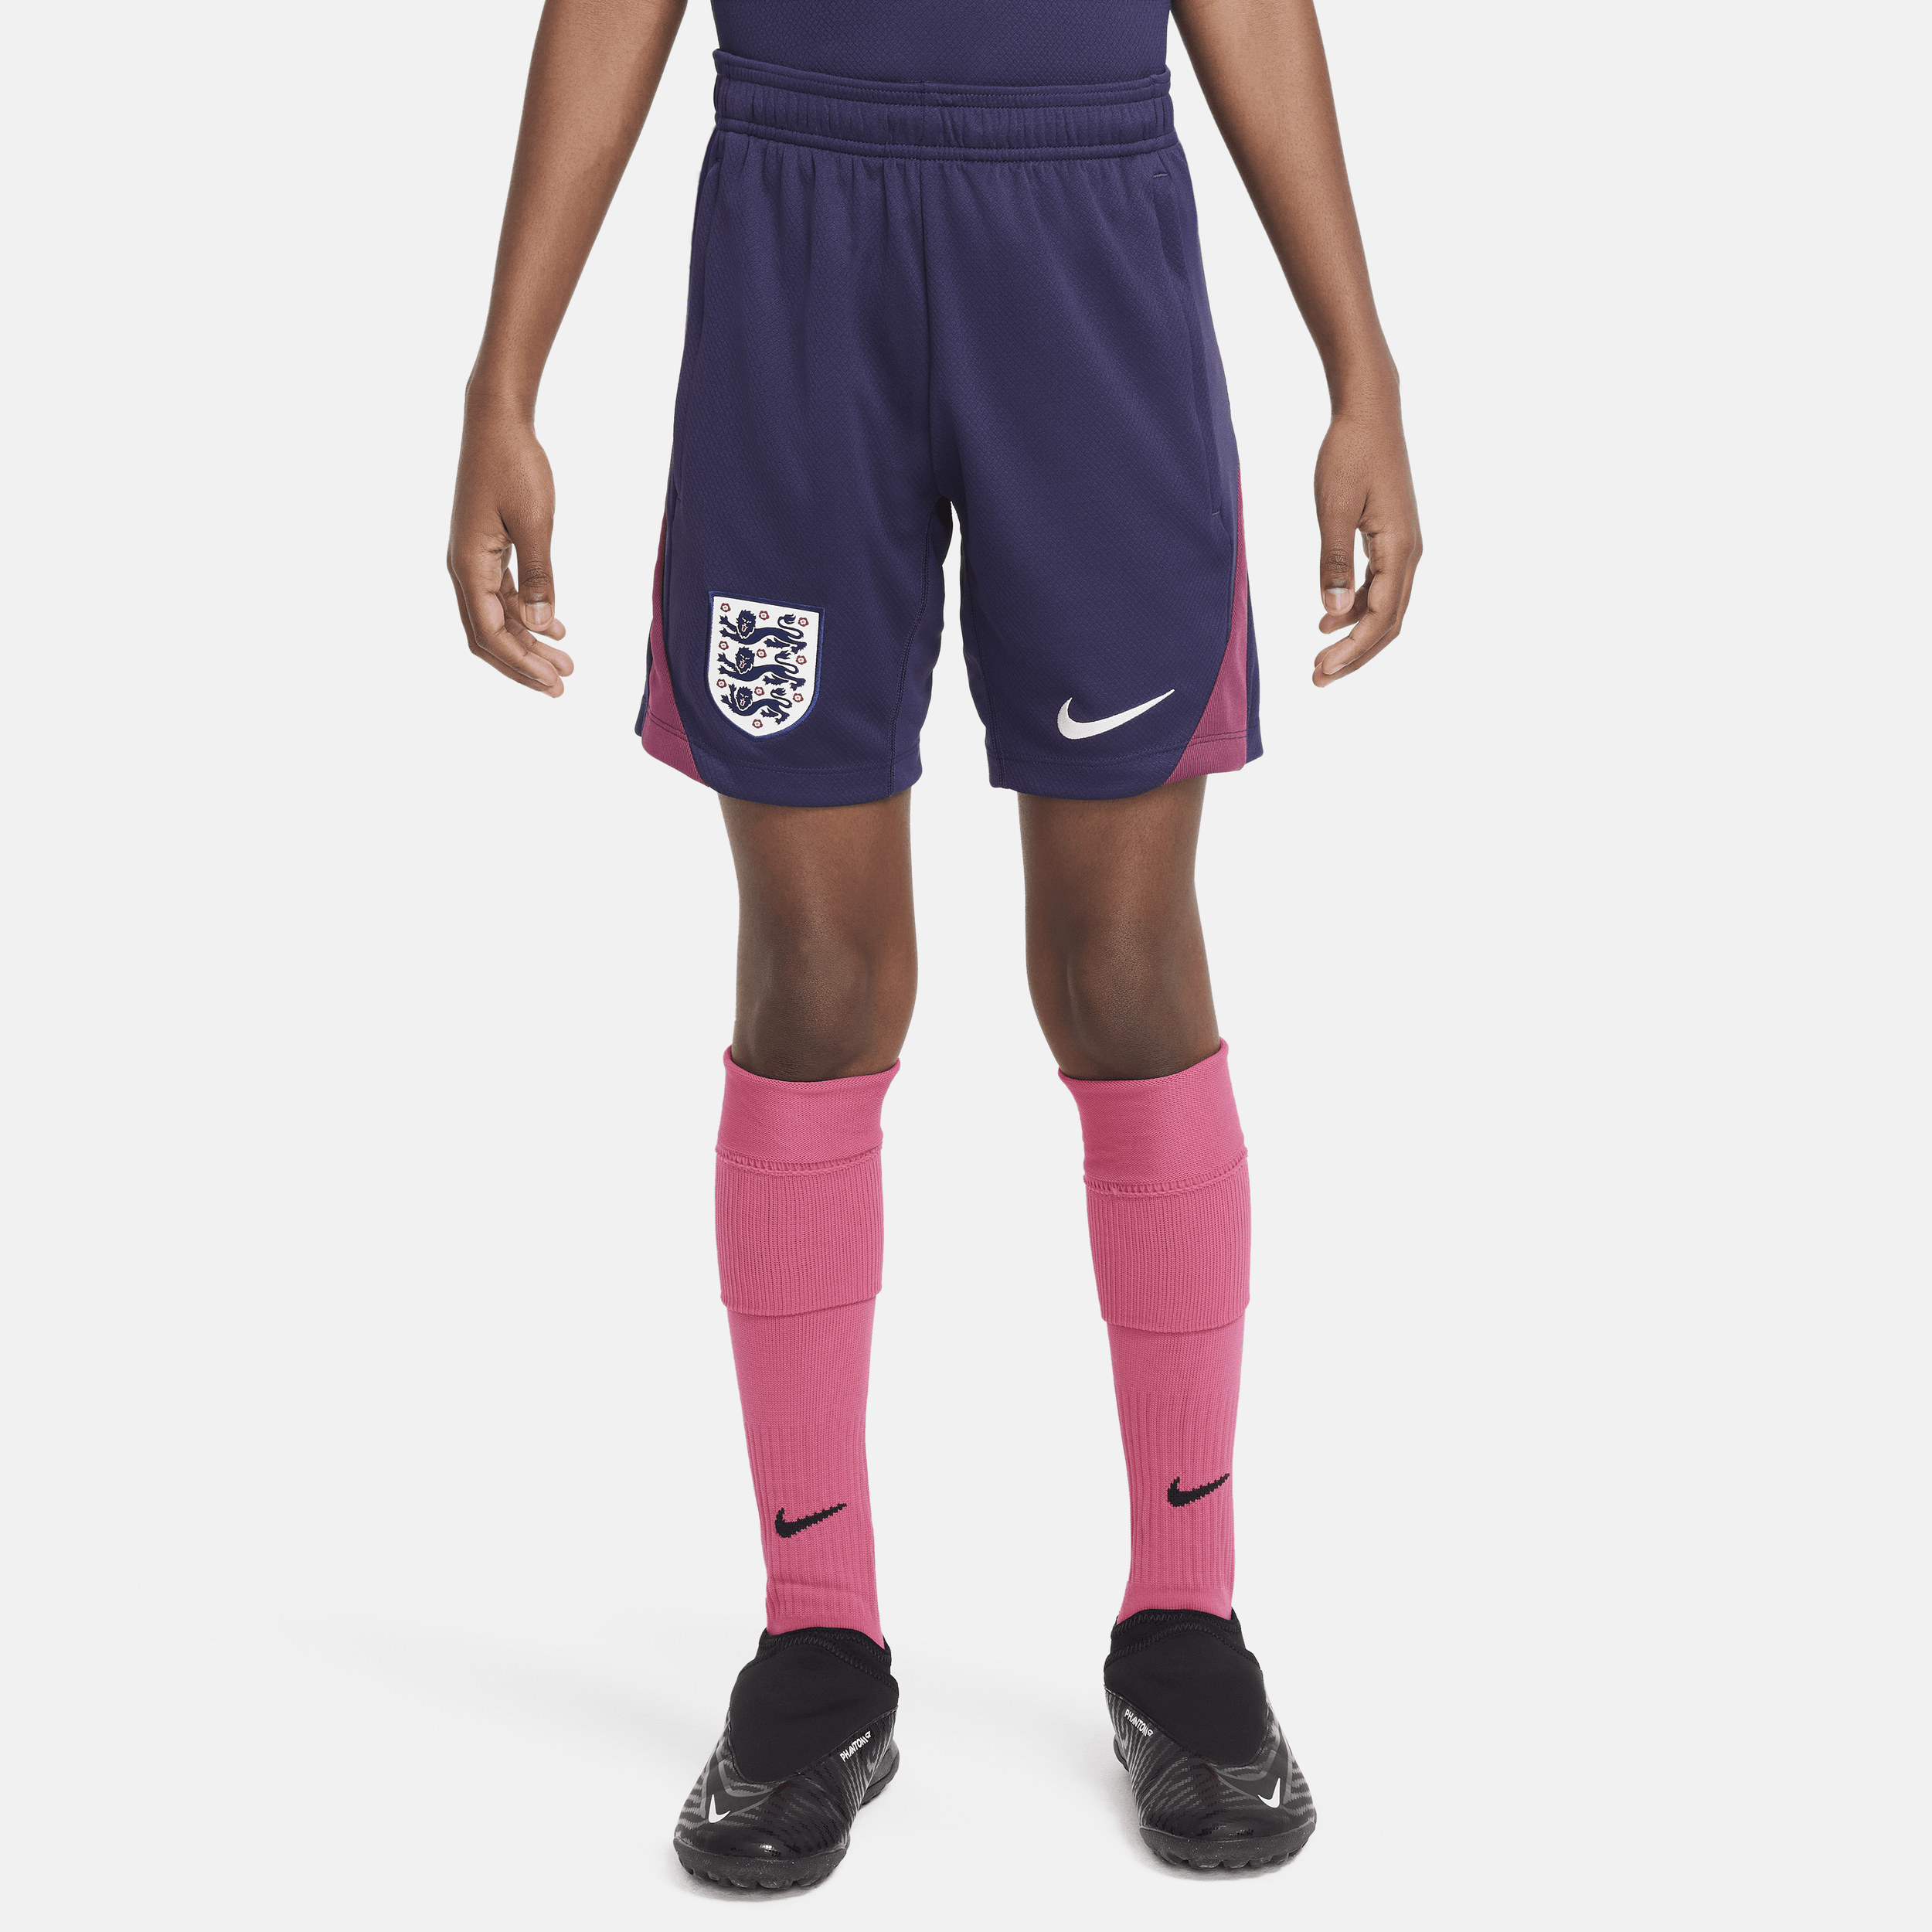 Engeland Strike Nike Dri-FIT knit voetbalshorts voor kids - Paars